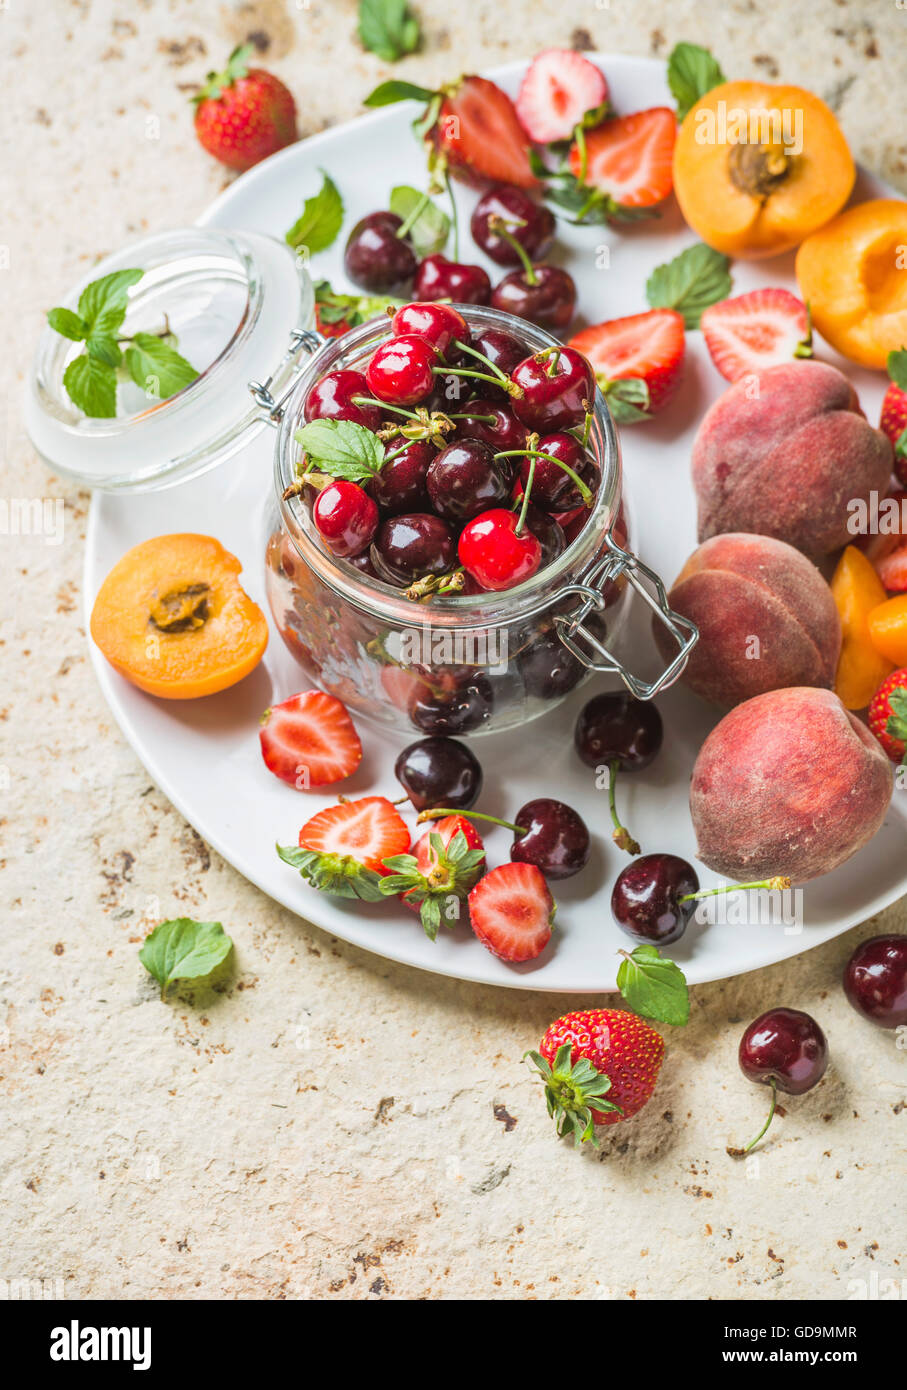 Gesunden Sommer Aromenpalette Sorte. Süße Kirschen, Pfirsiche, Erdbeeren auf weißem Teller über leichte konkreten Hintergrund. Top v Stockfoto